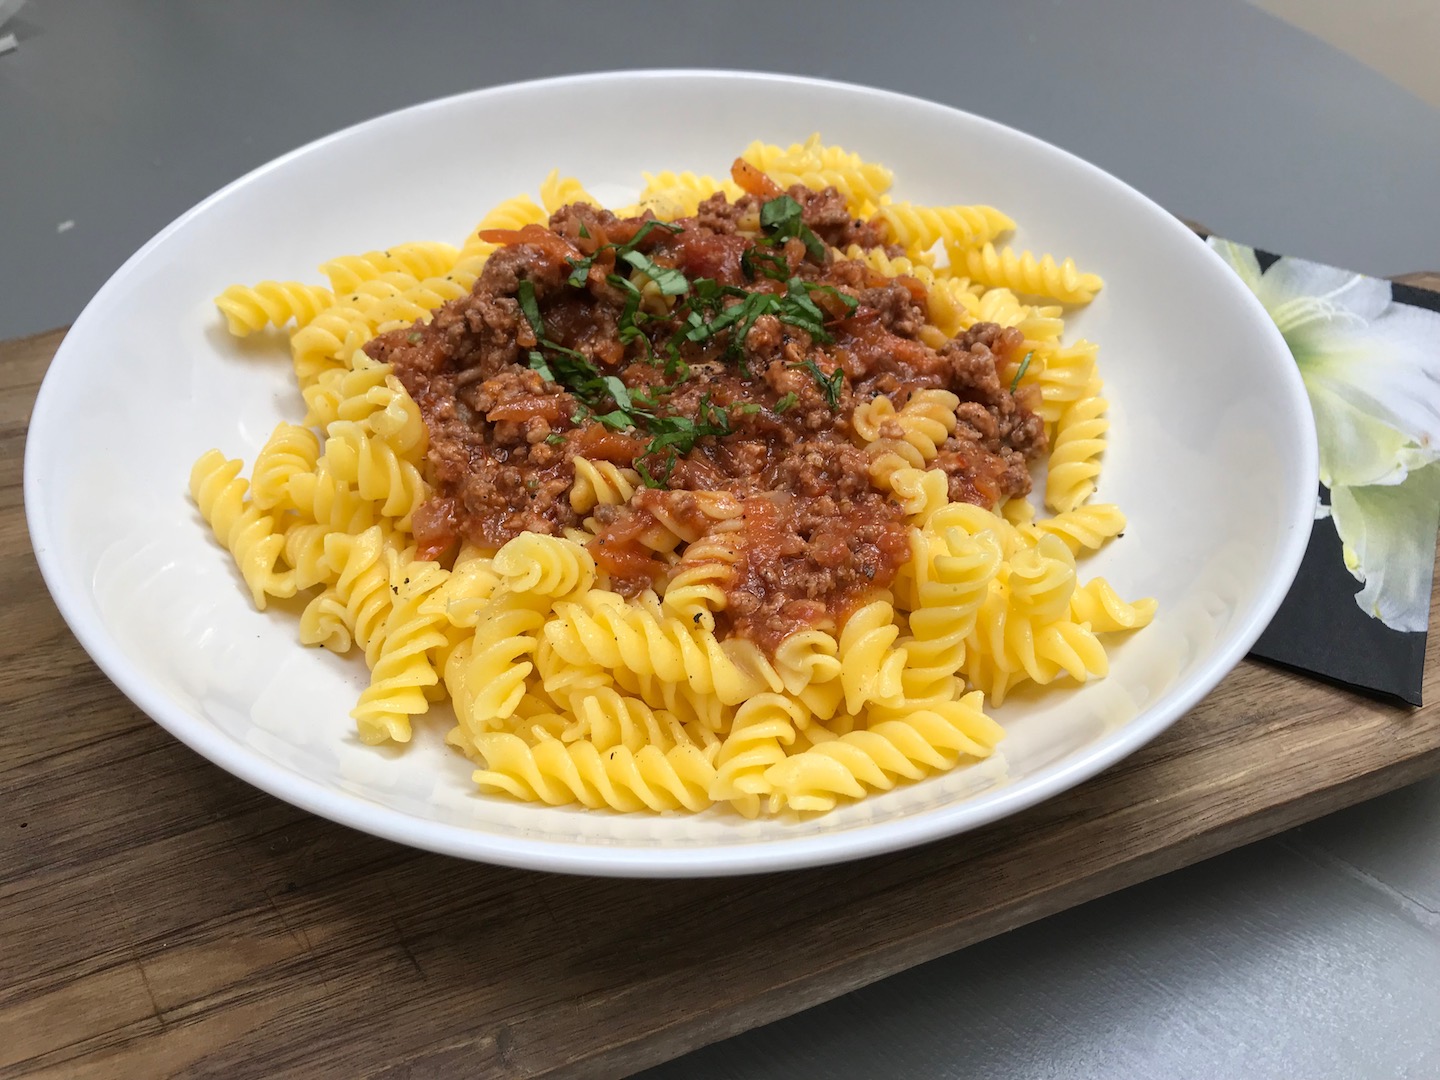 Glutenfri pasta med kjøttsaus. Middag på 30 minutter